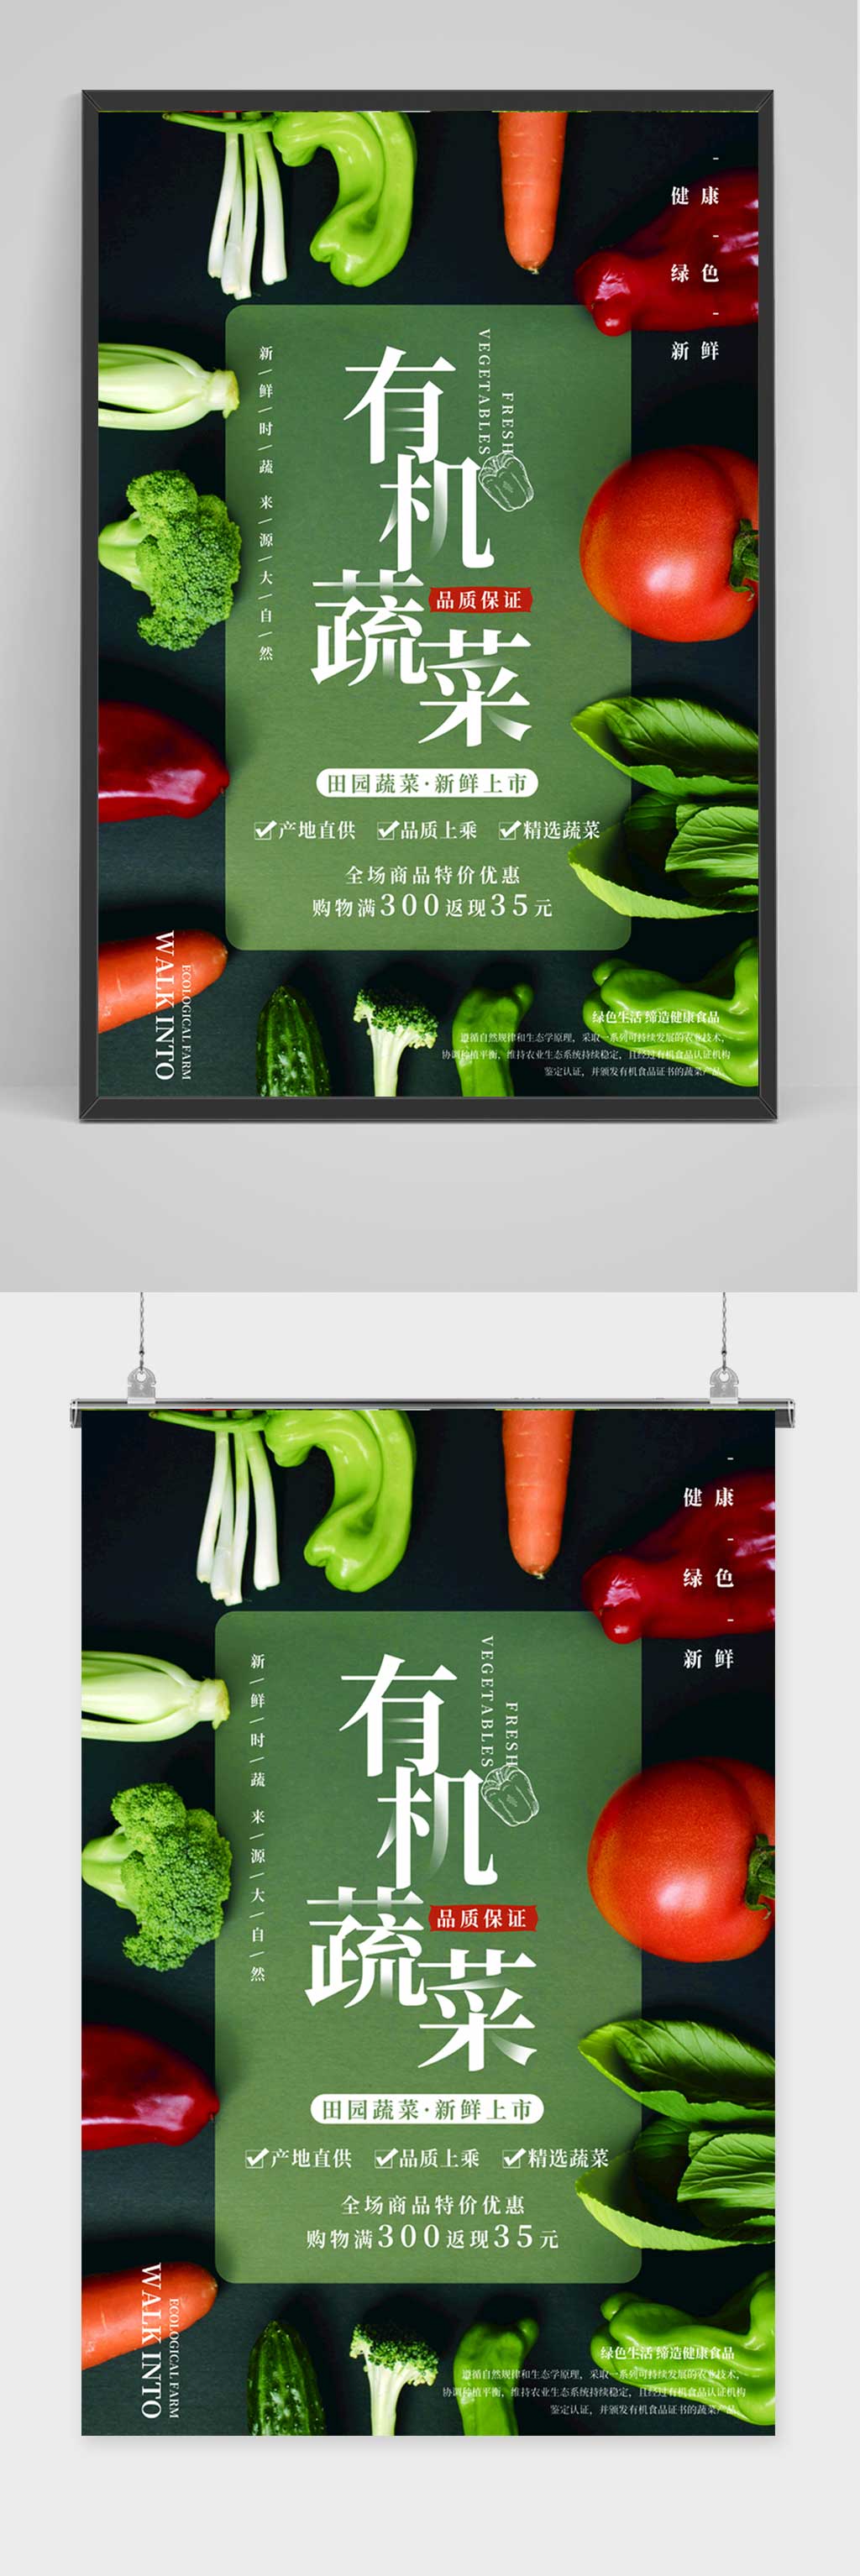 绿色蔬菜文案图片